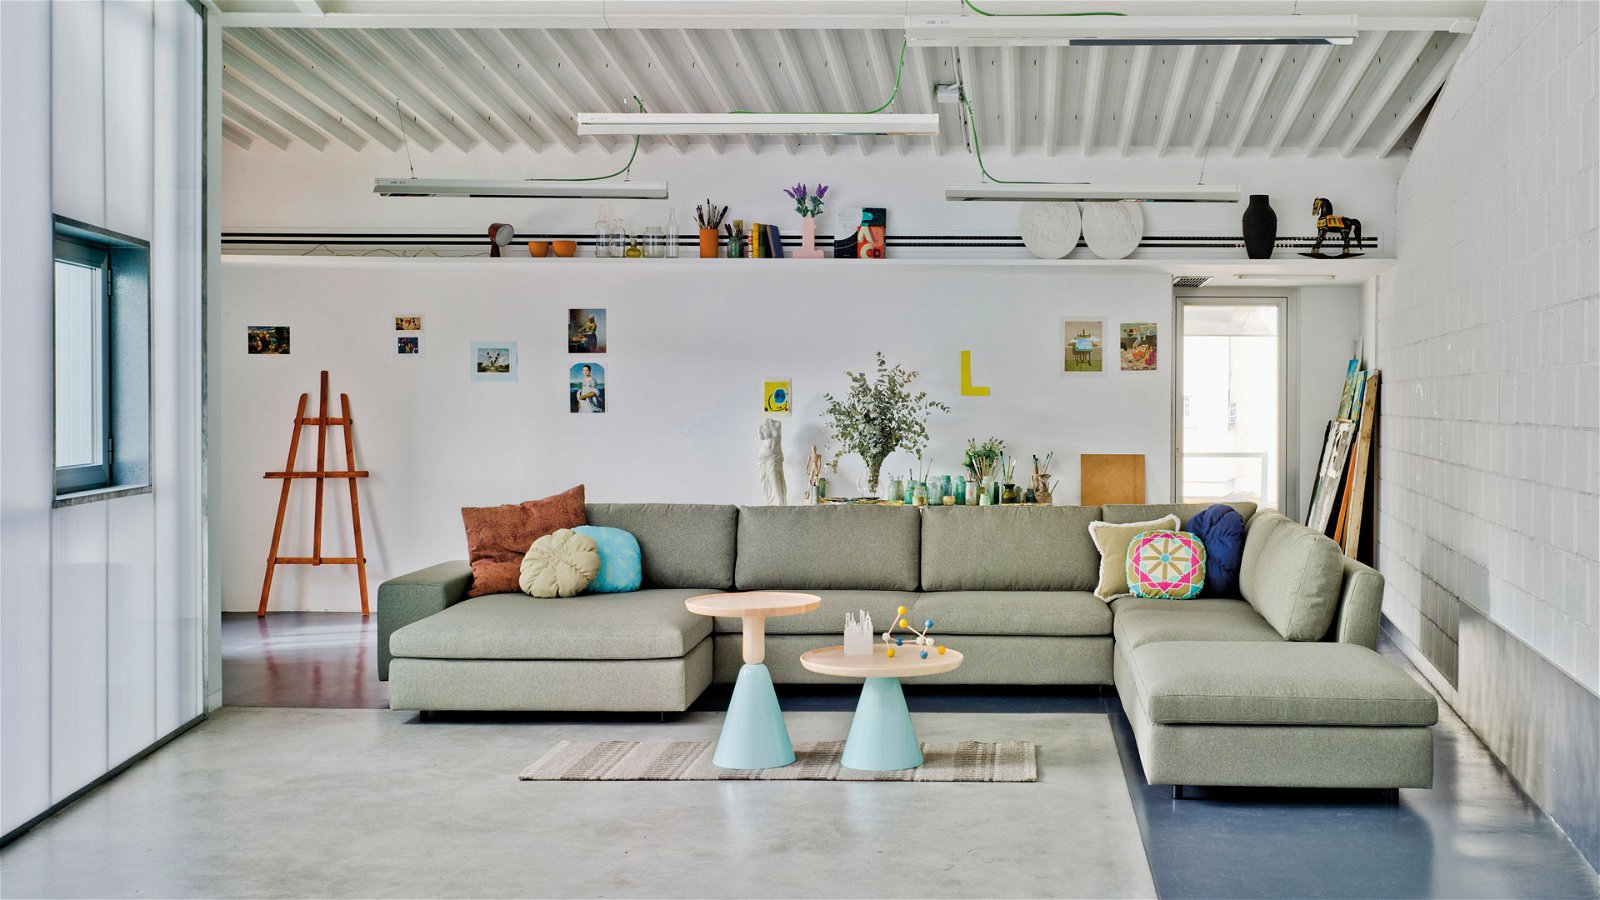 Elige los mejores muebles para tu oficina y convierte tu espacio